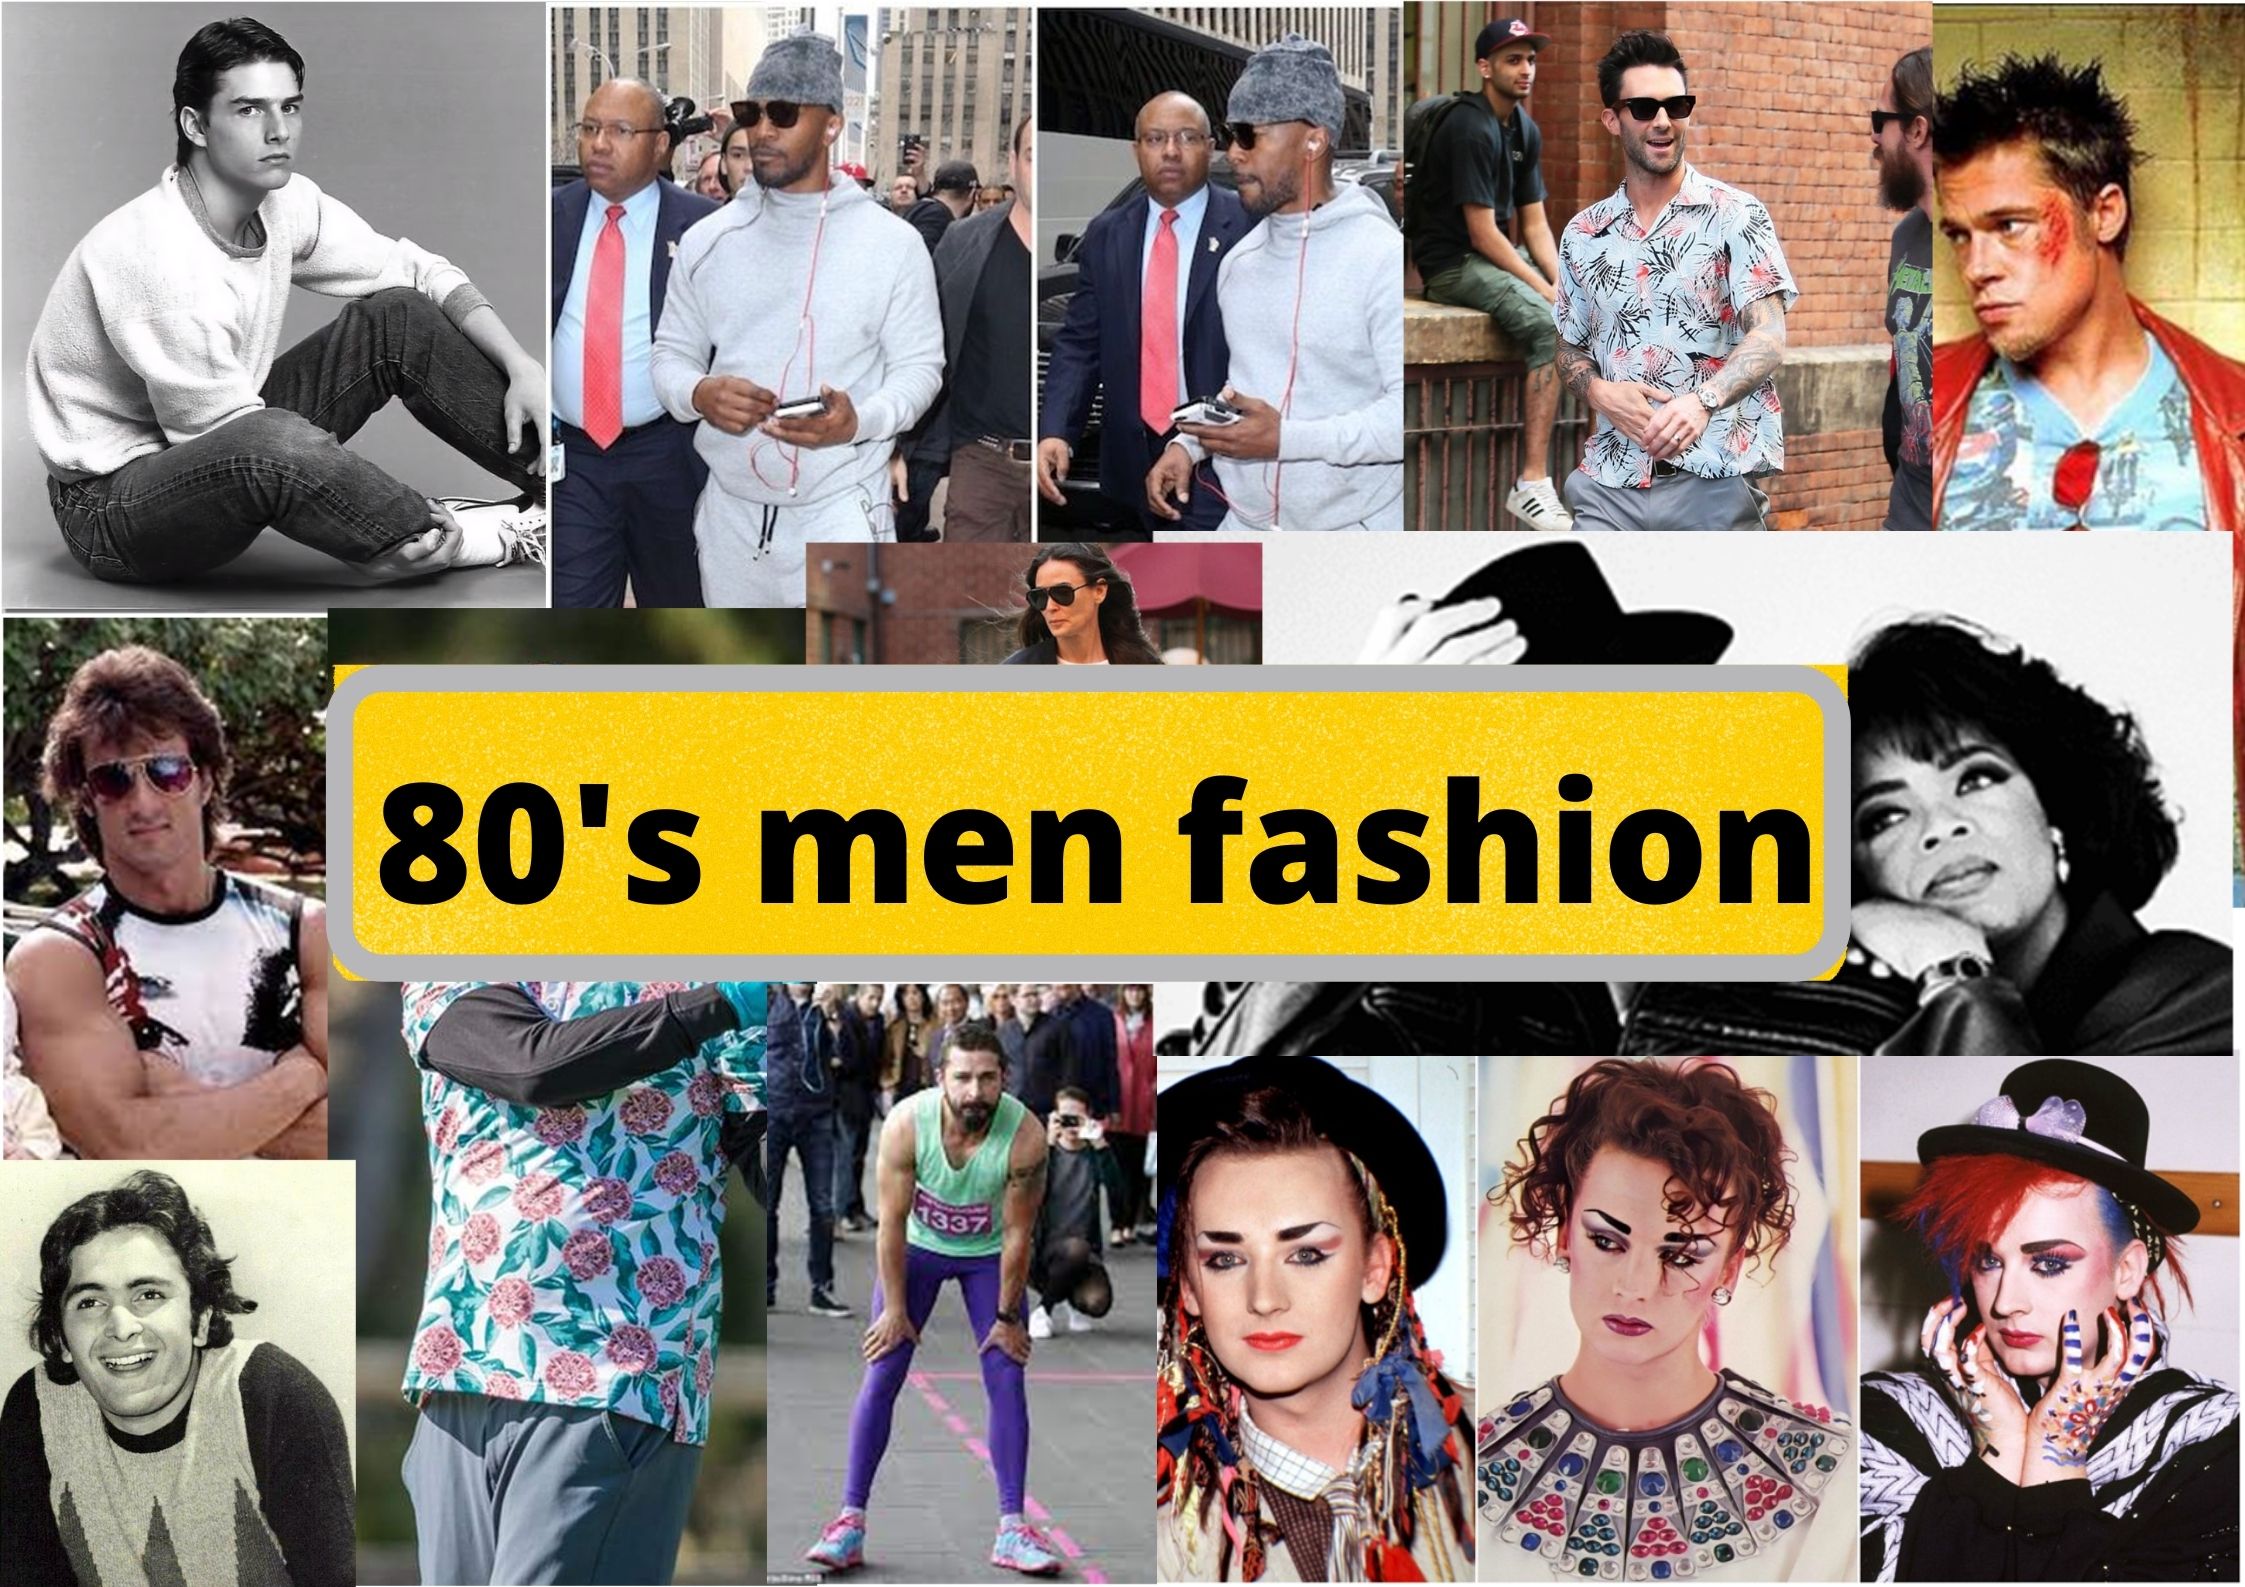 80s men fashion